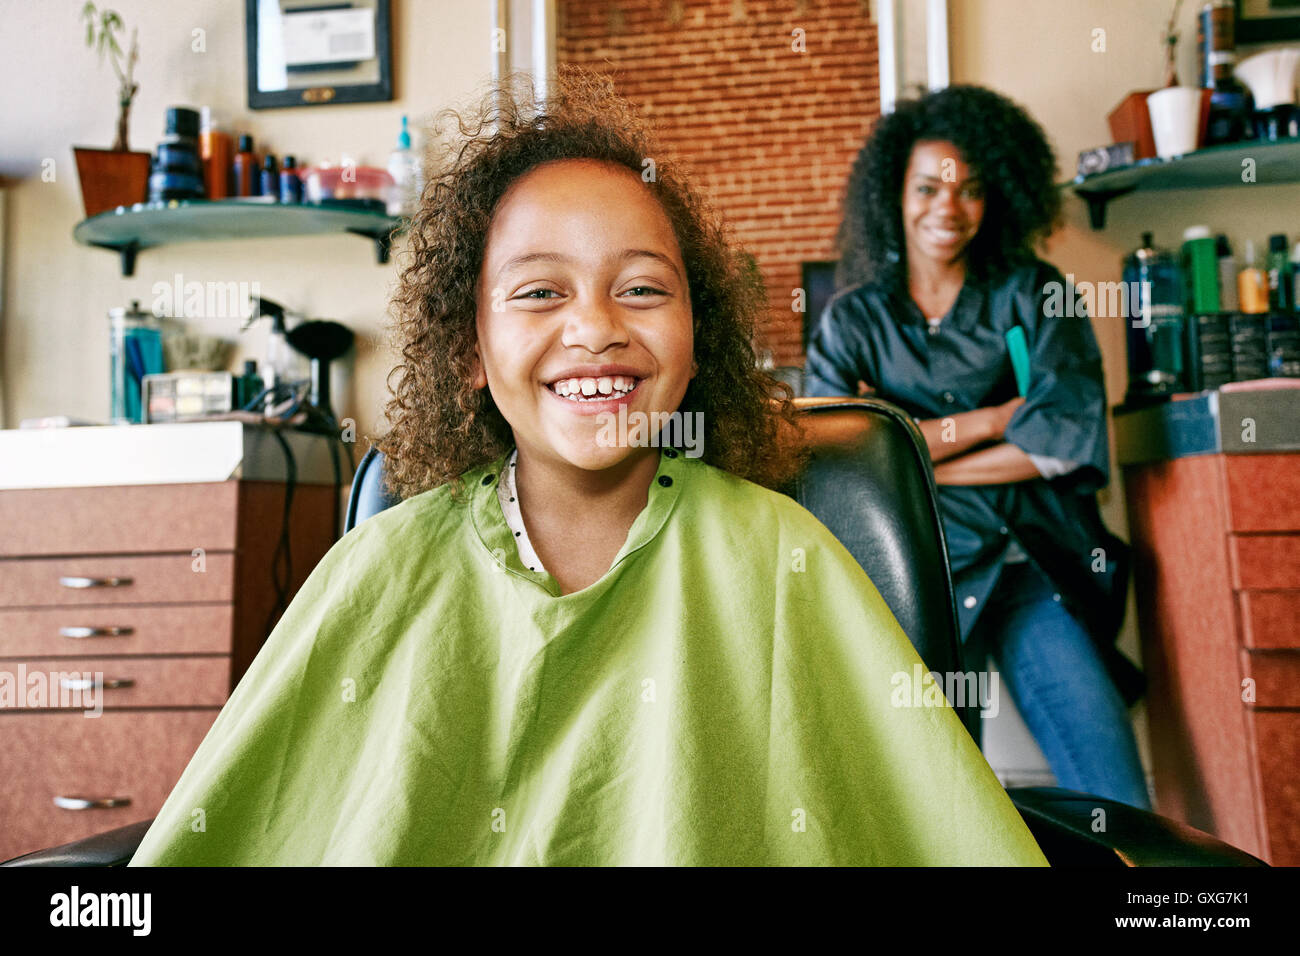 Smiling coiffure et client dans un salon de coiffure Banque D'Images